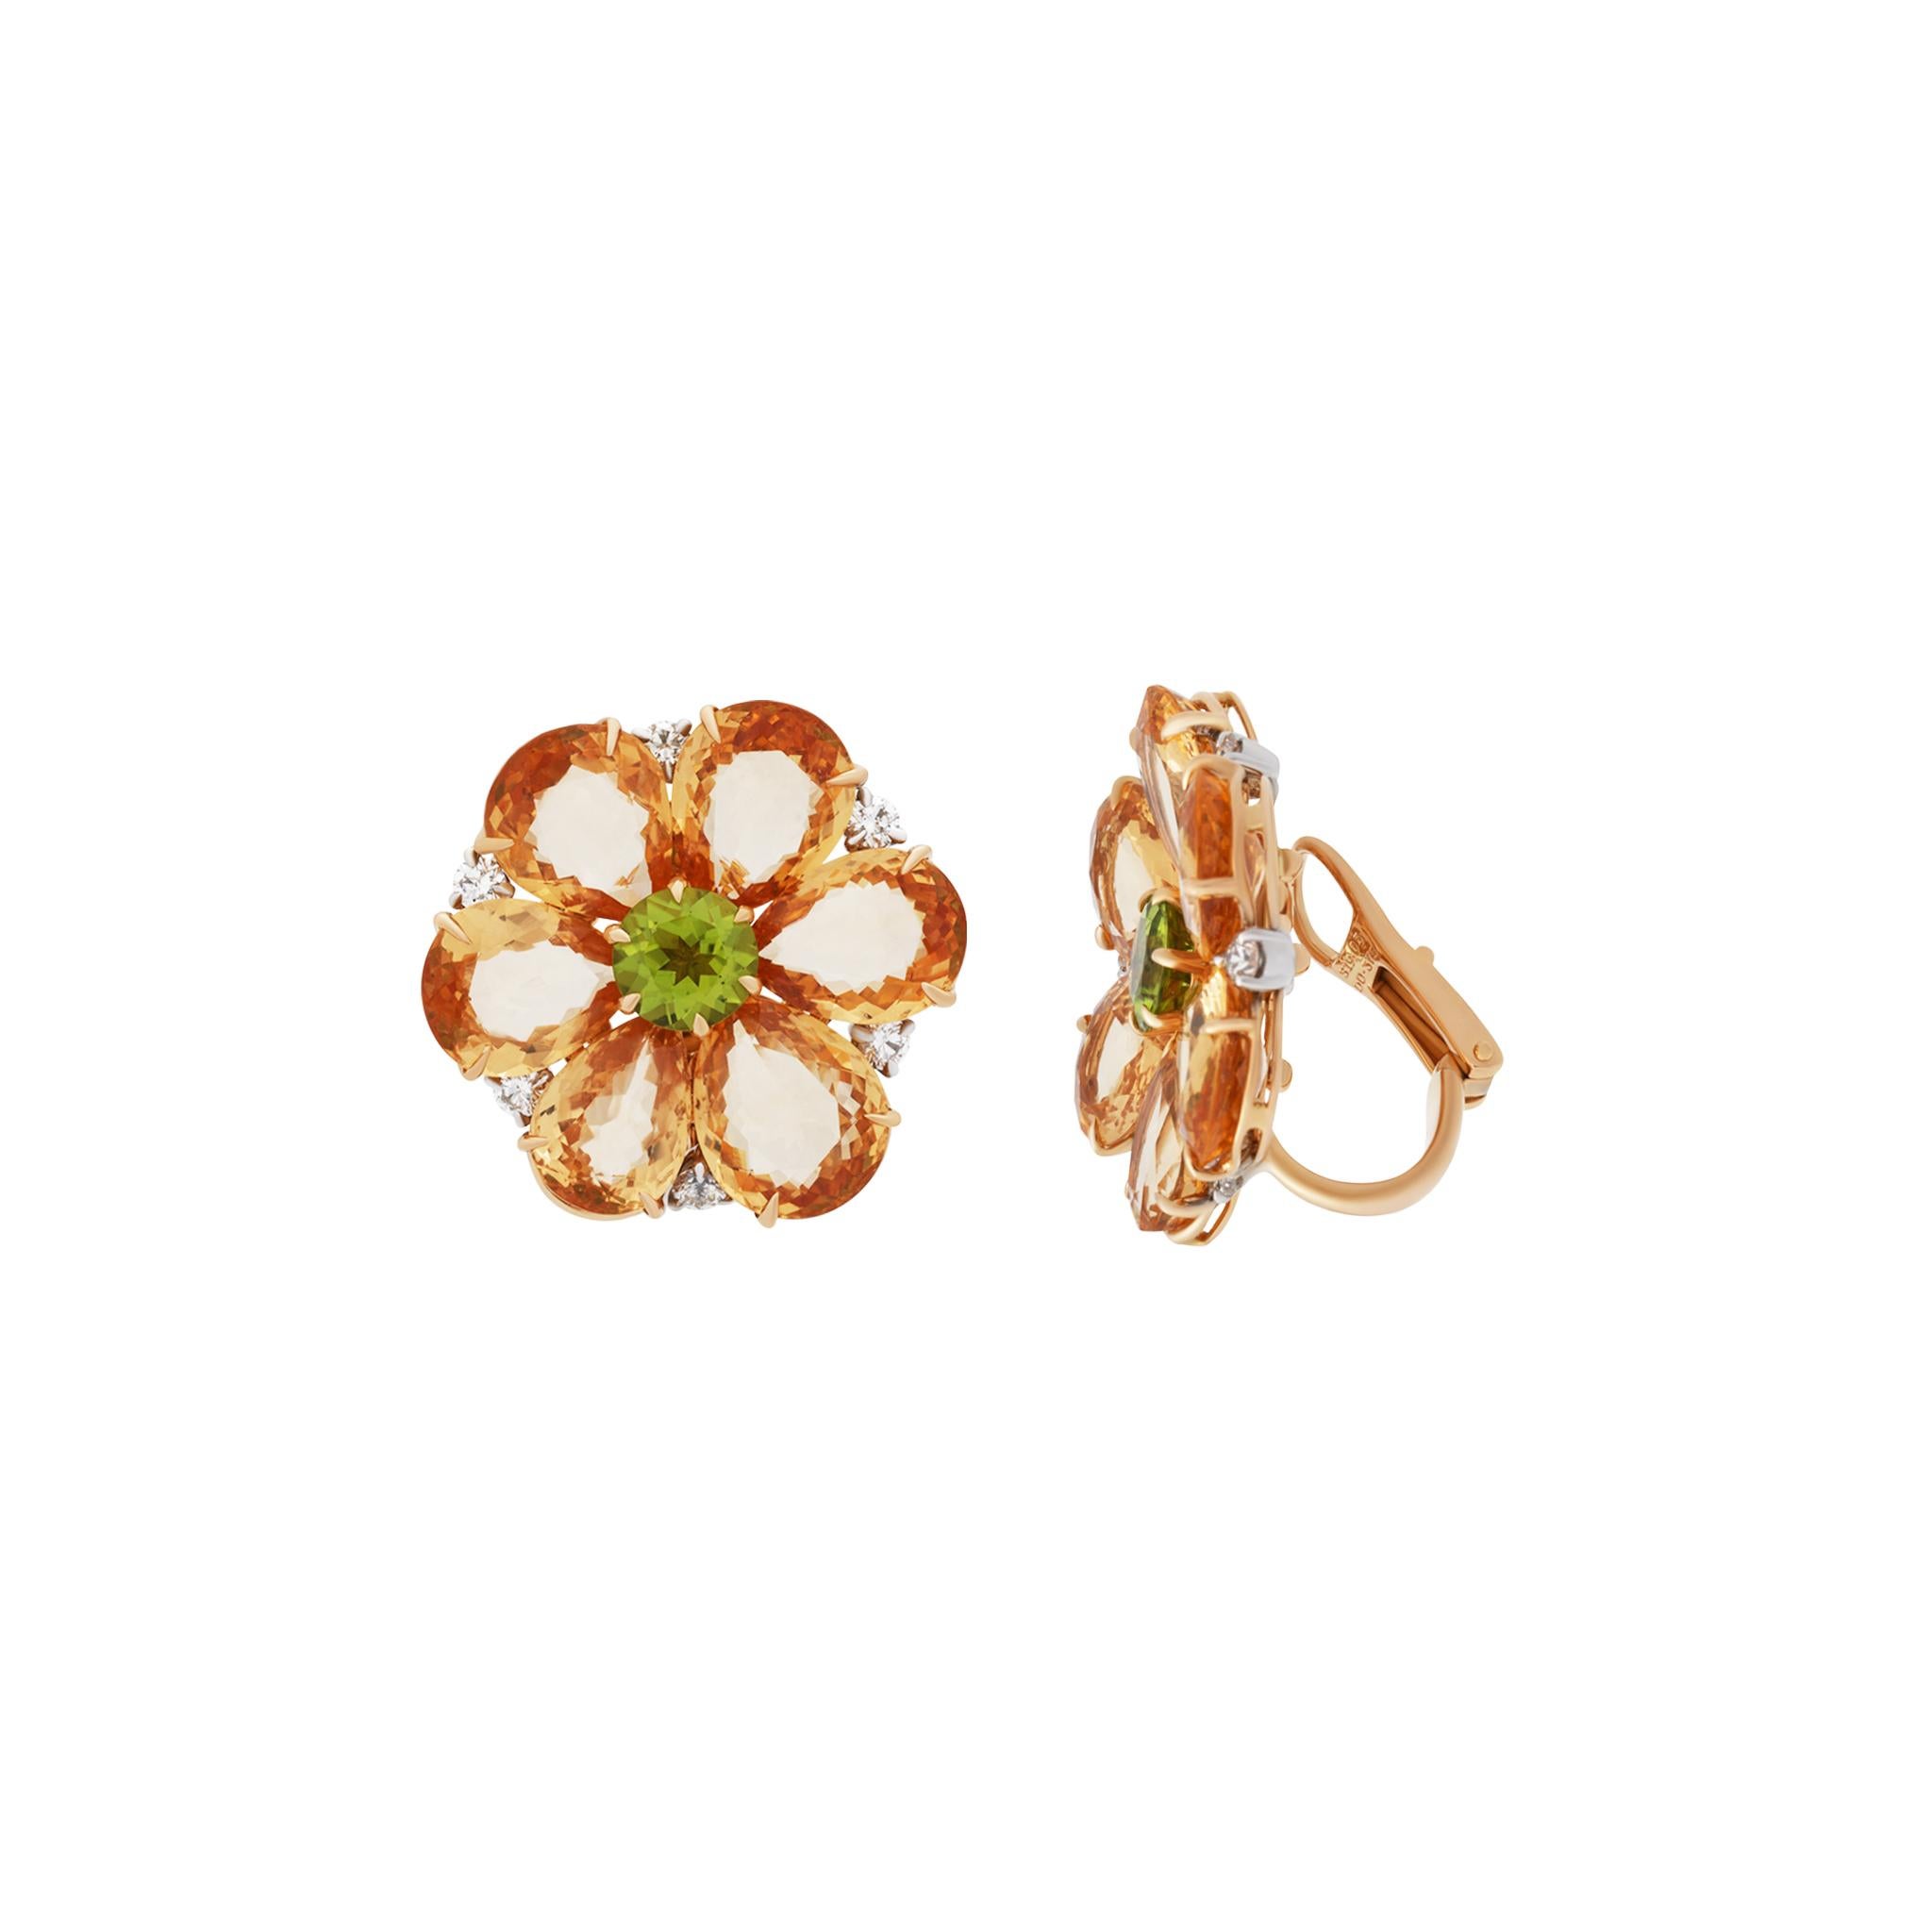 Round Cut Bvlgari 18 Karat Yellow Gold Orange Sapphire Peridot and Diamond Earrings